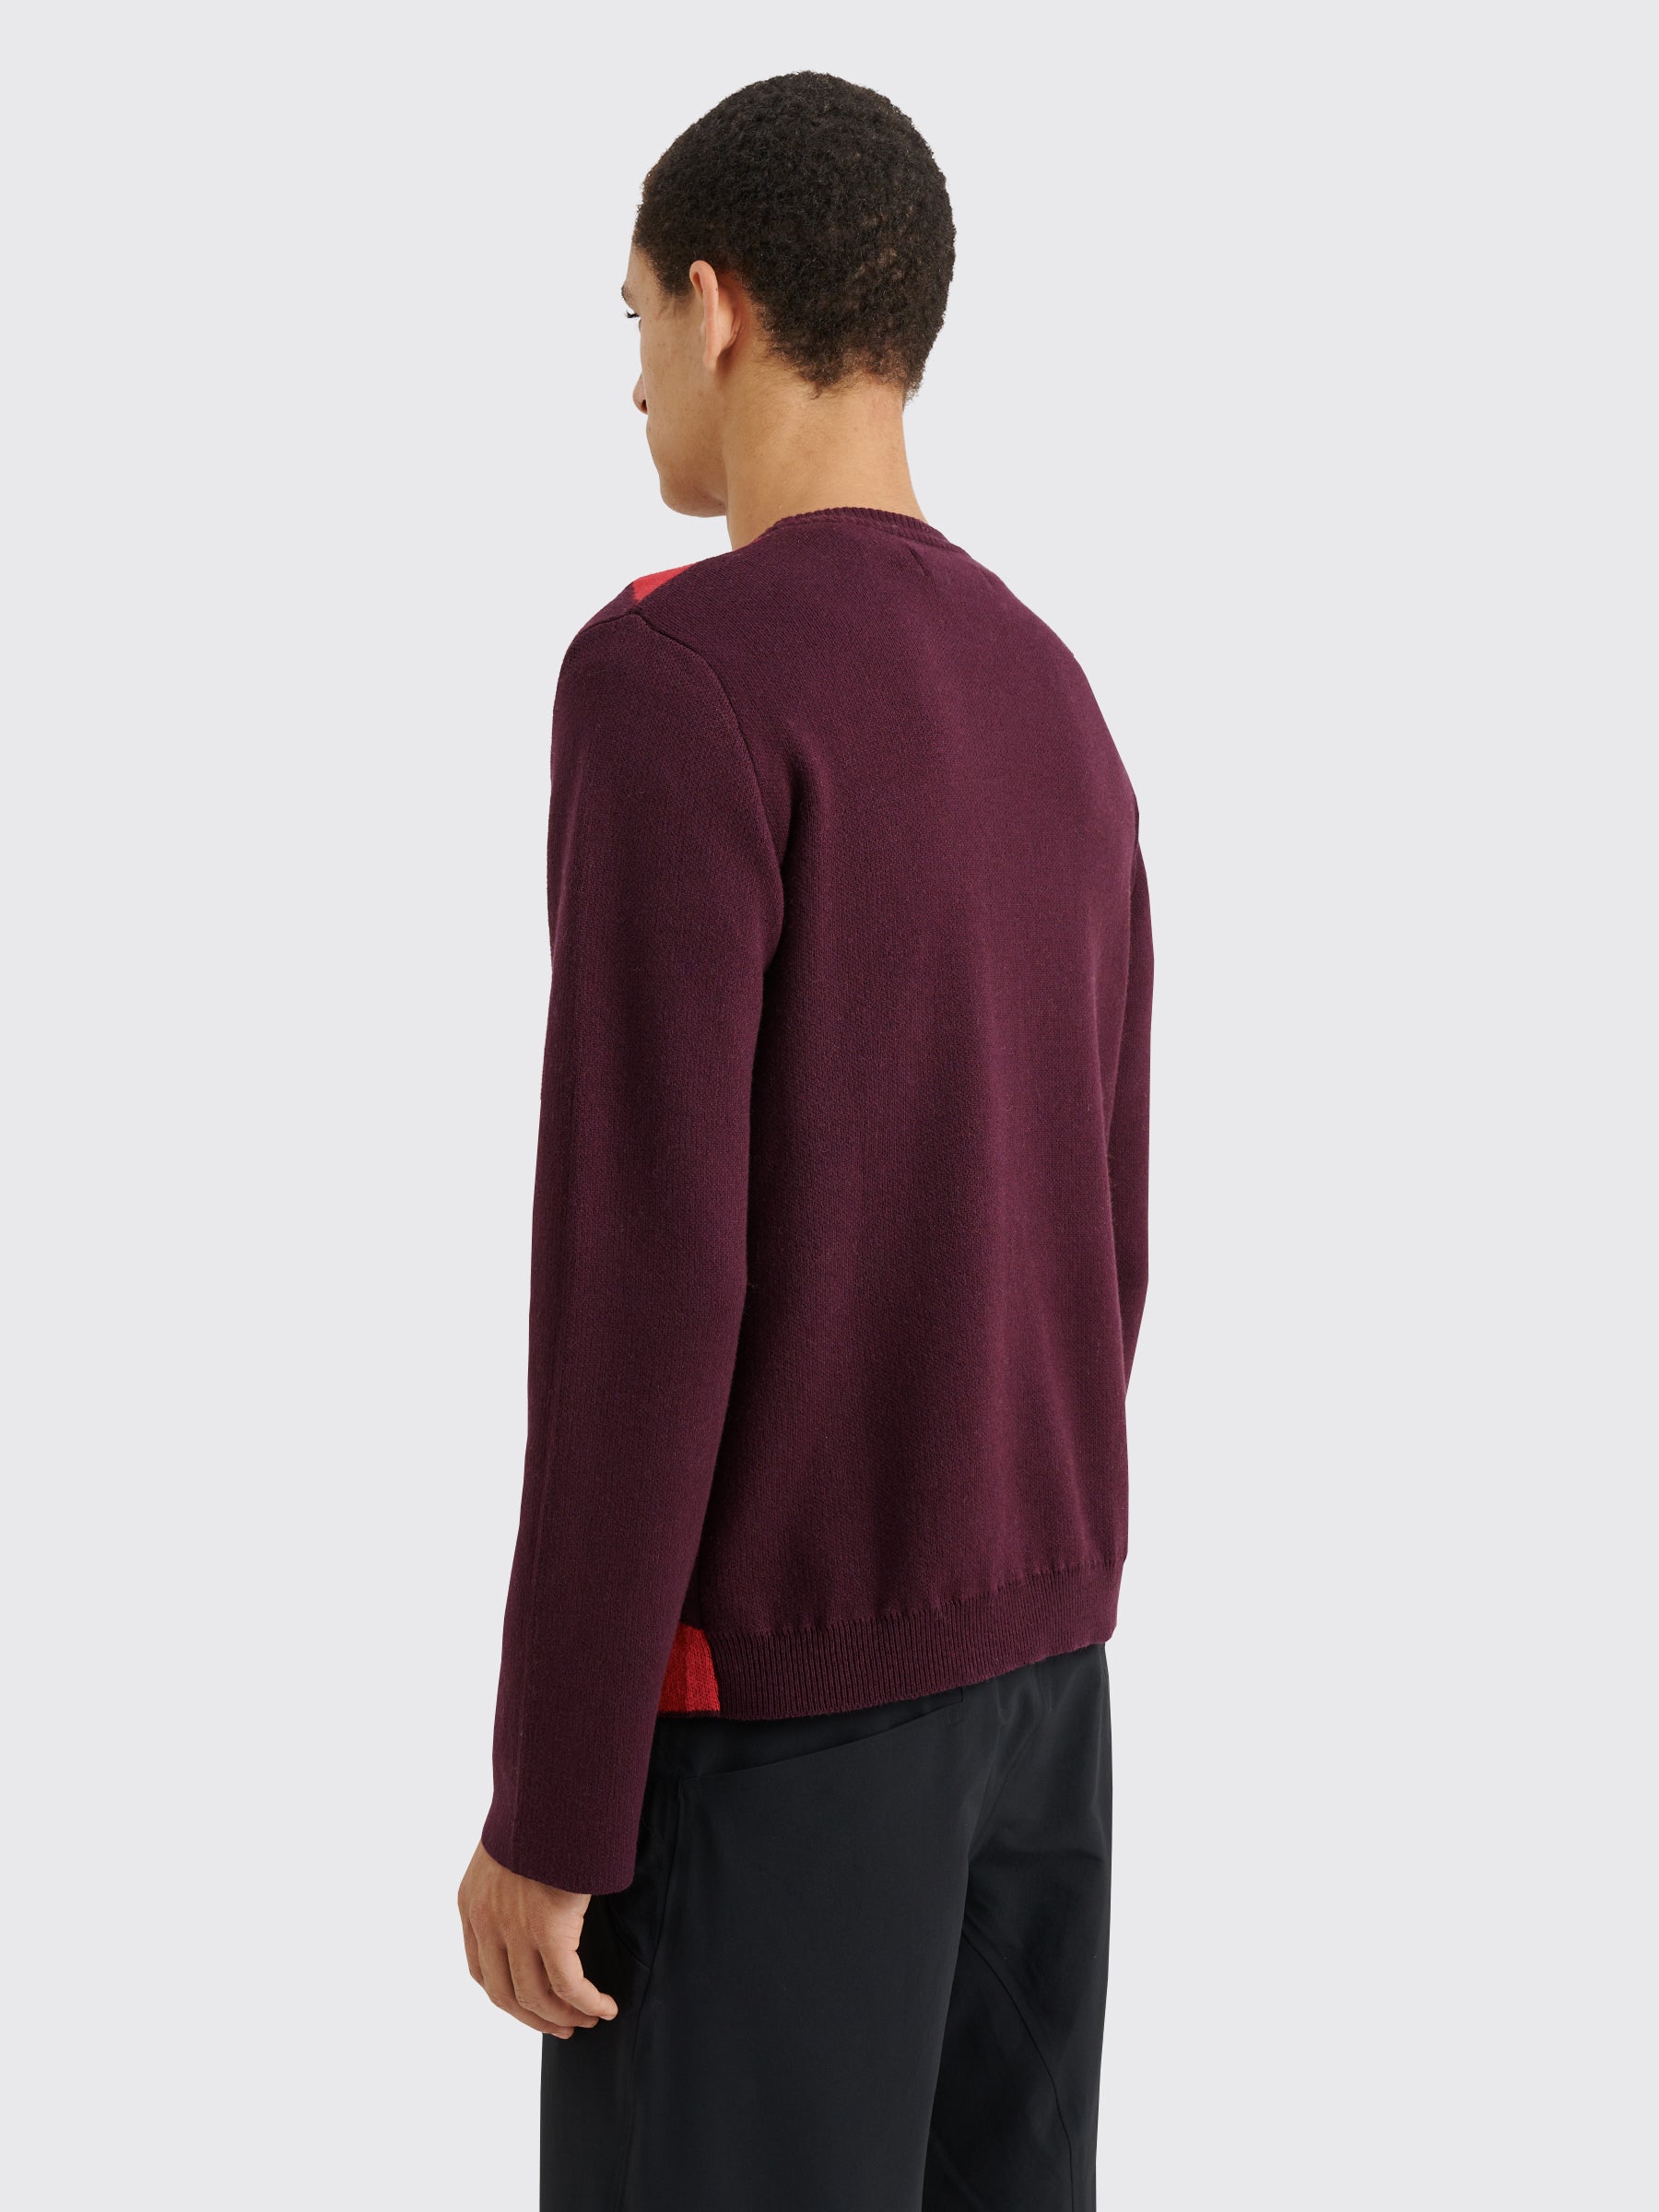 TRÈS BIEN everywear Pattern Knitted Sweatshirt Cotton Cashmere Burgundy / Red